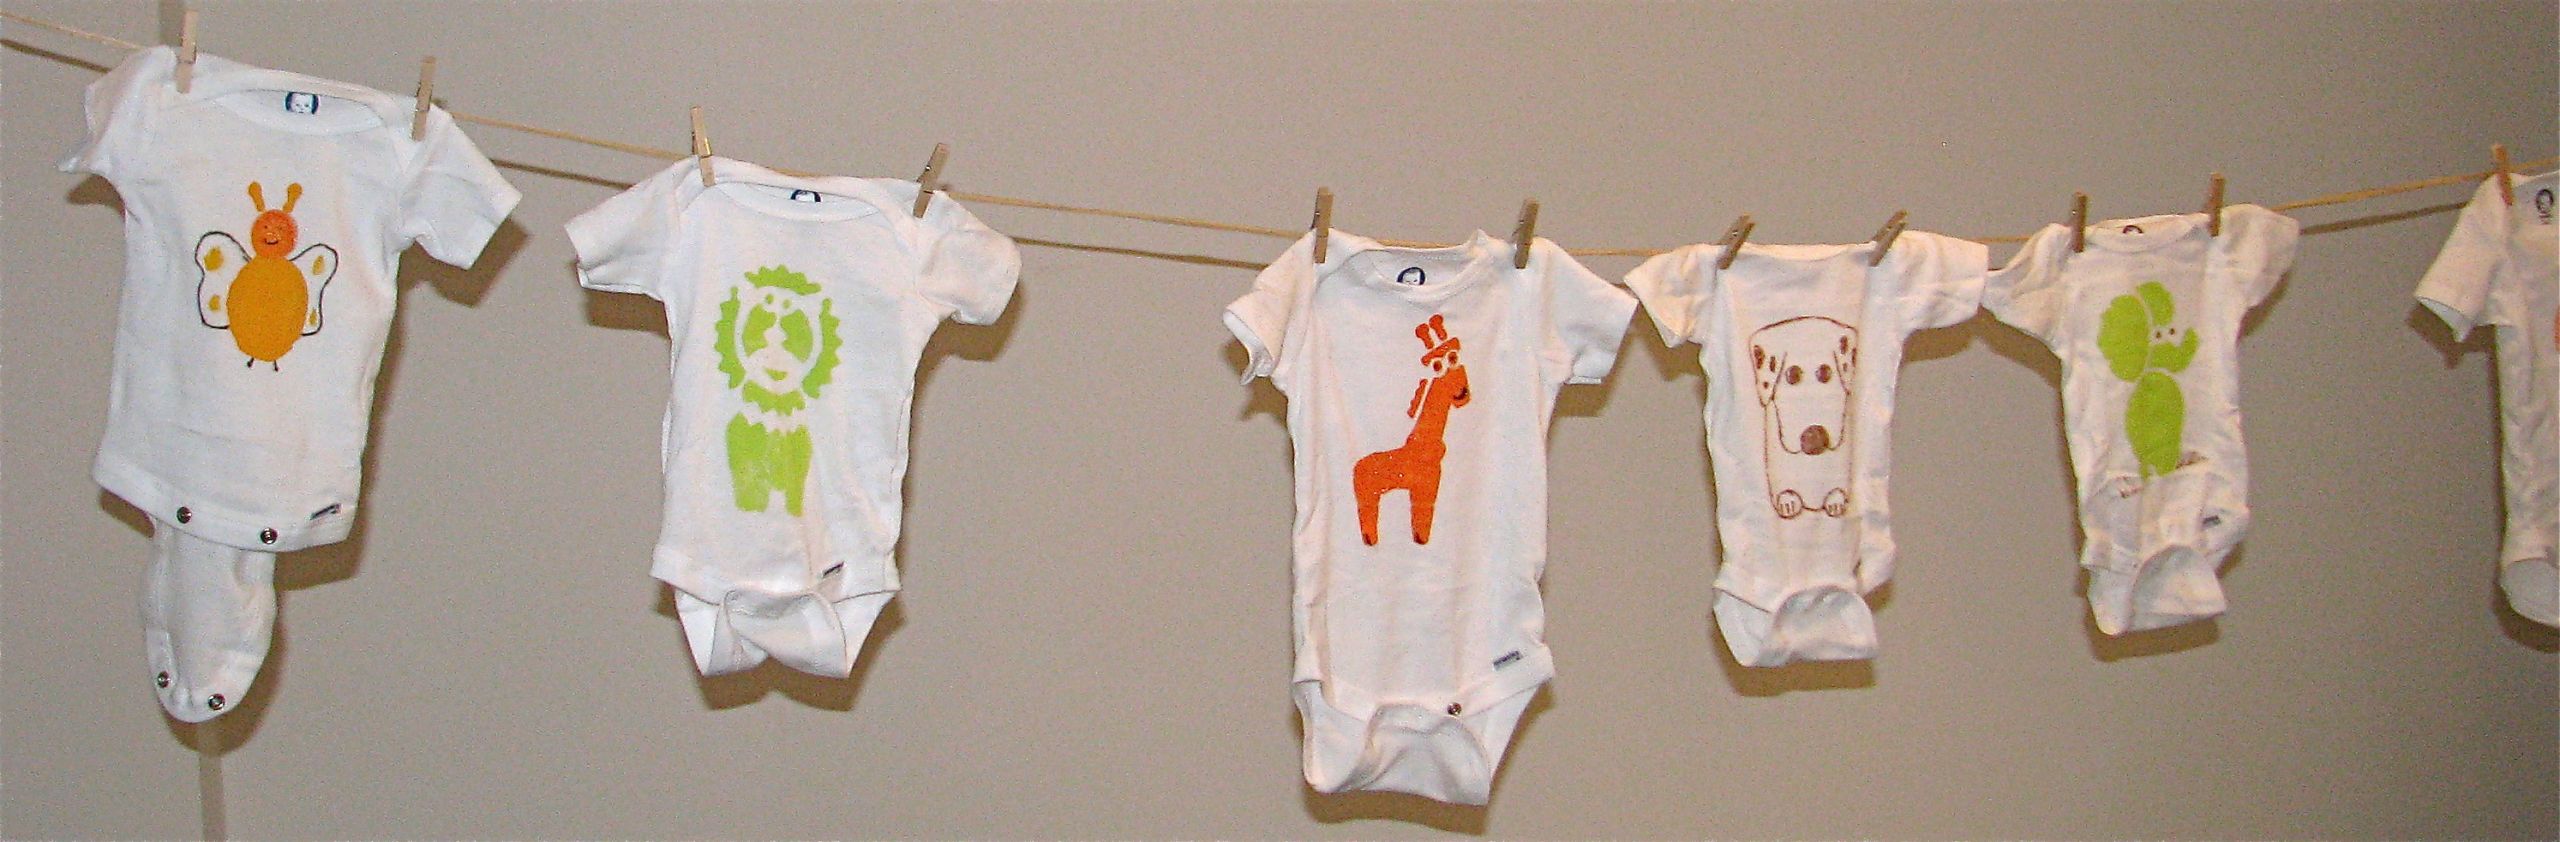 Baby Shower Onesie Decorating Ideas
 Decorate esies baby shower ideas